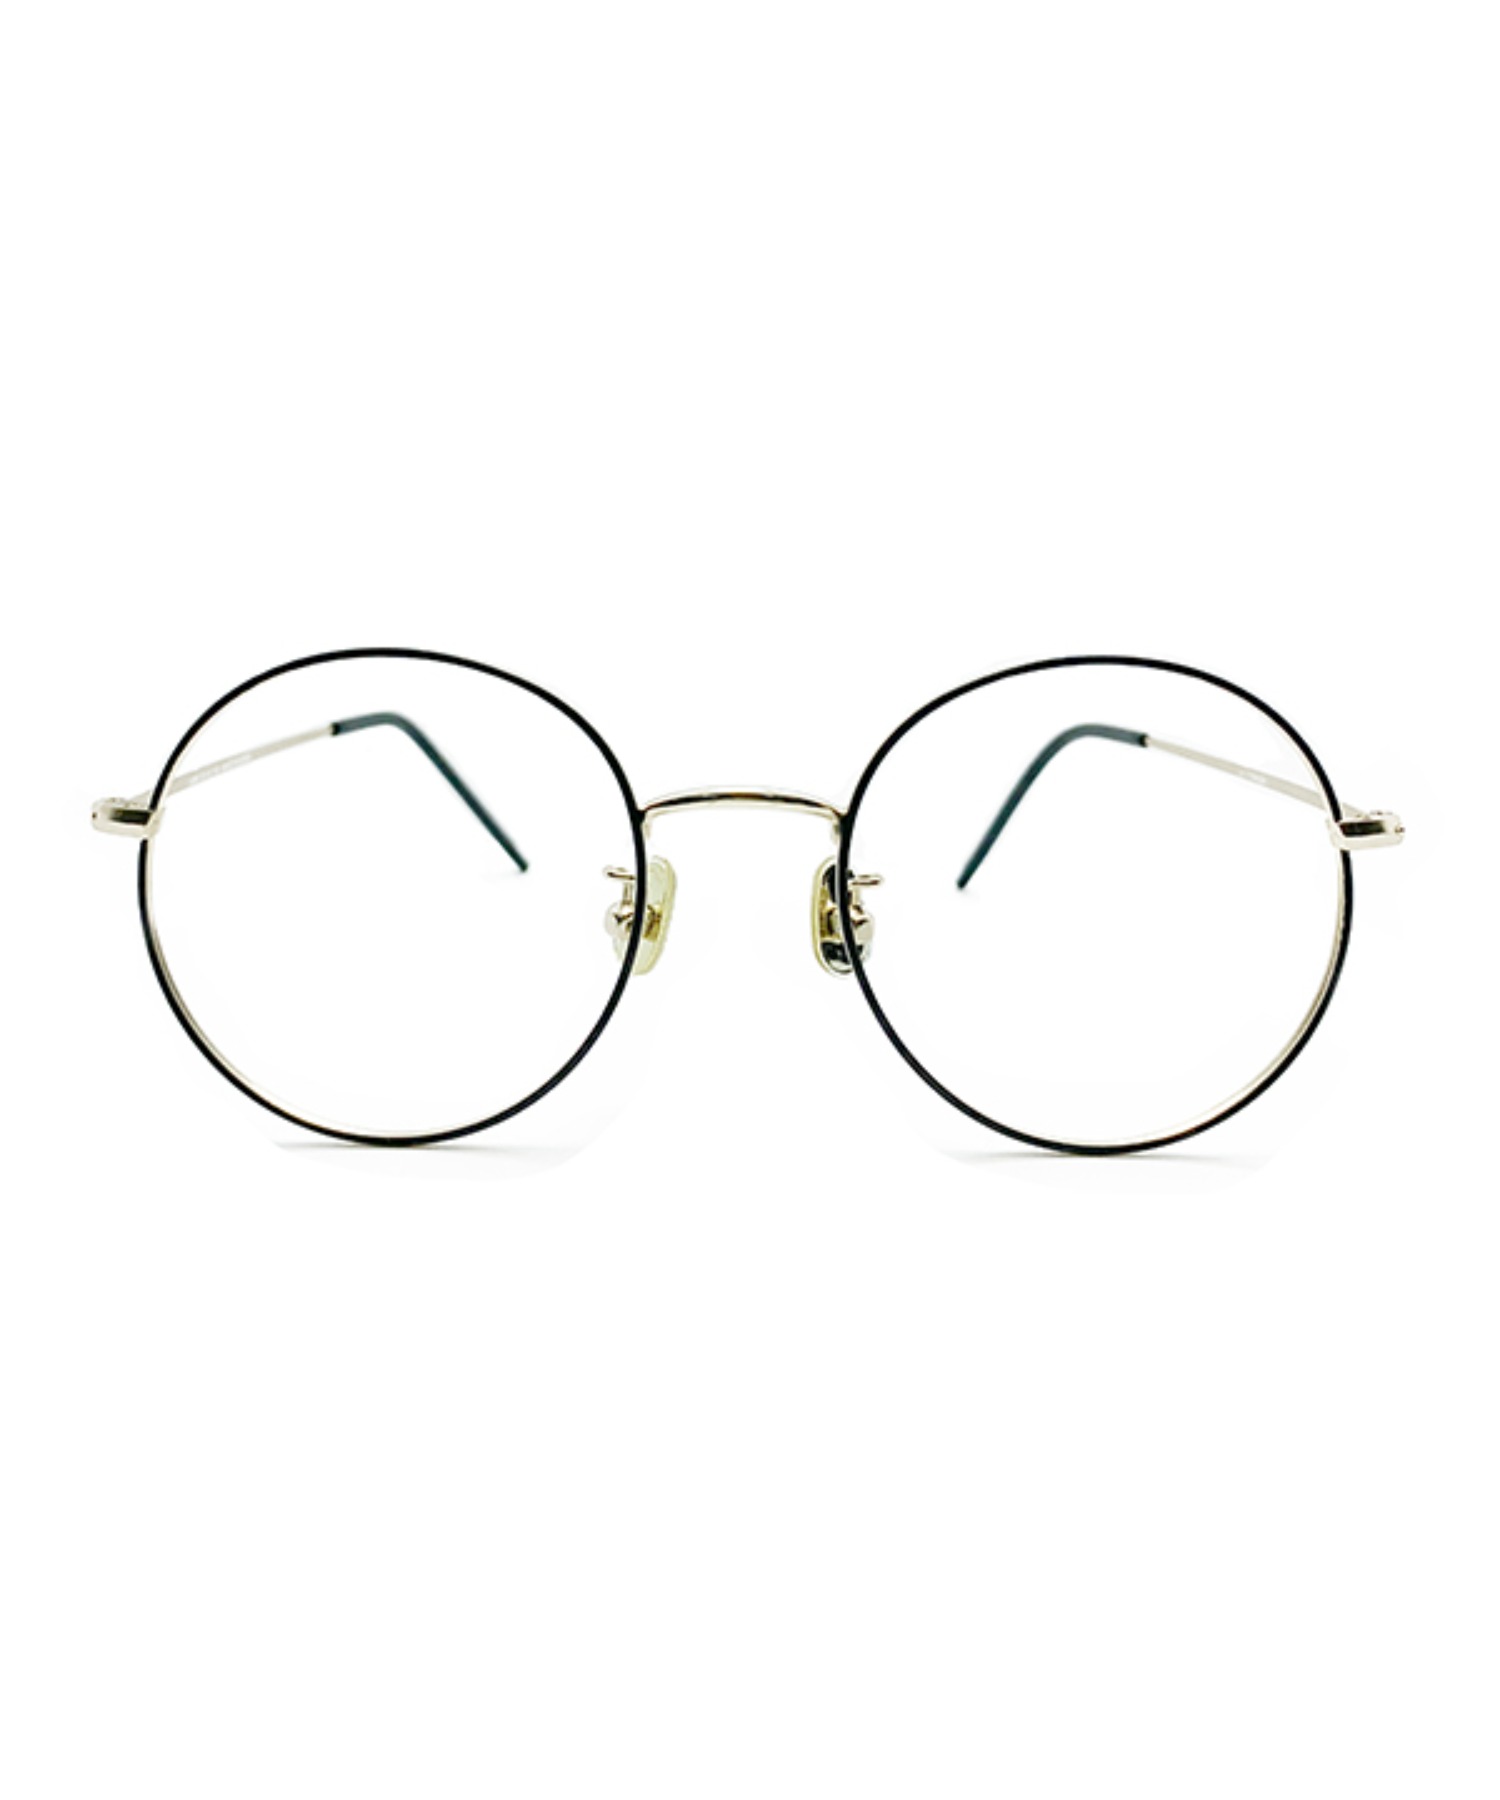 VLING 1008, Korean glasses, sunglasses, eyeglasses, glasses